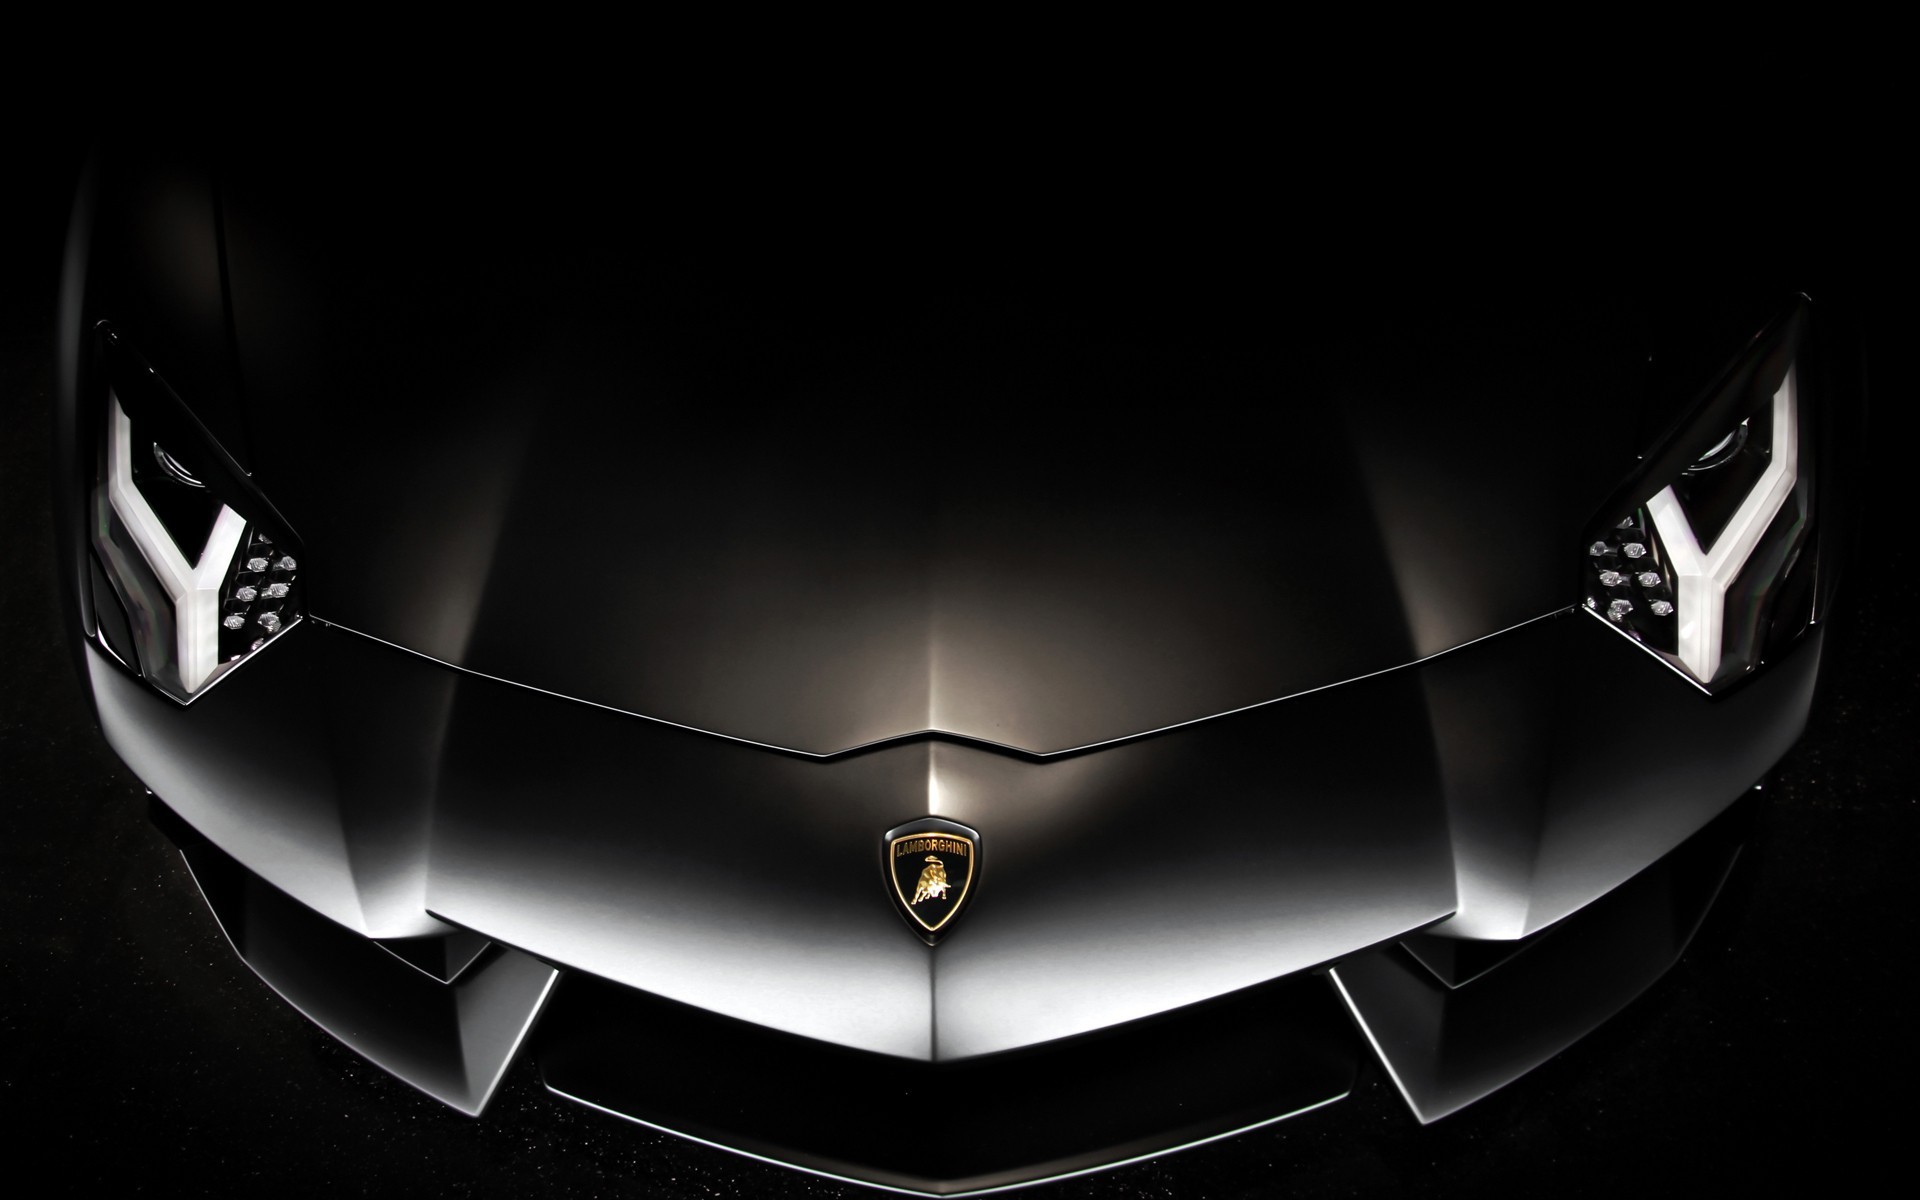 General 1920x1200 car Lamborghini vehicle supercars dark